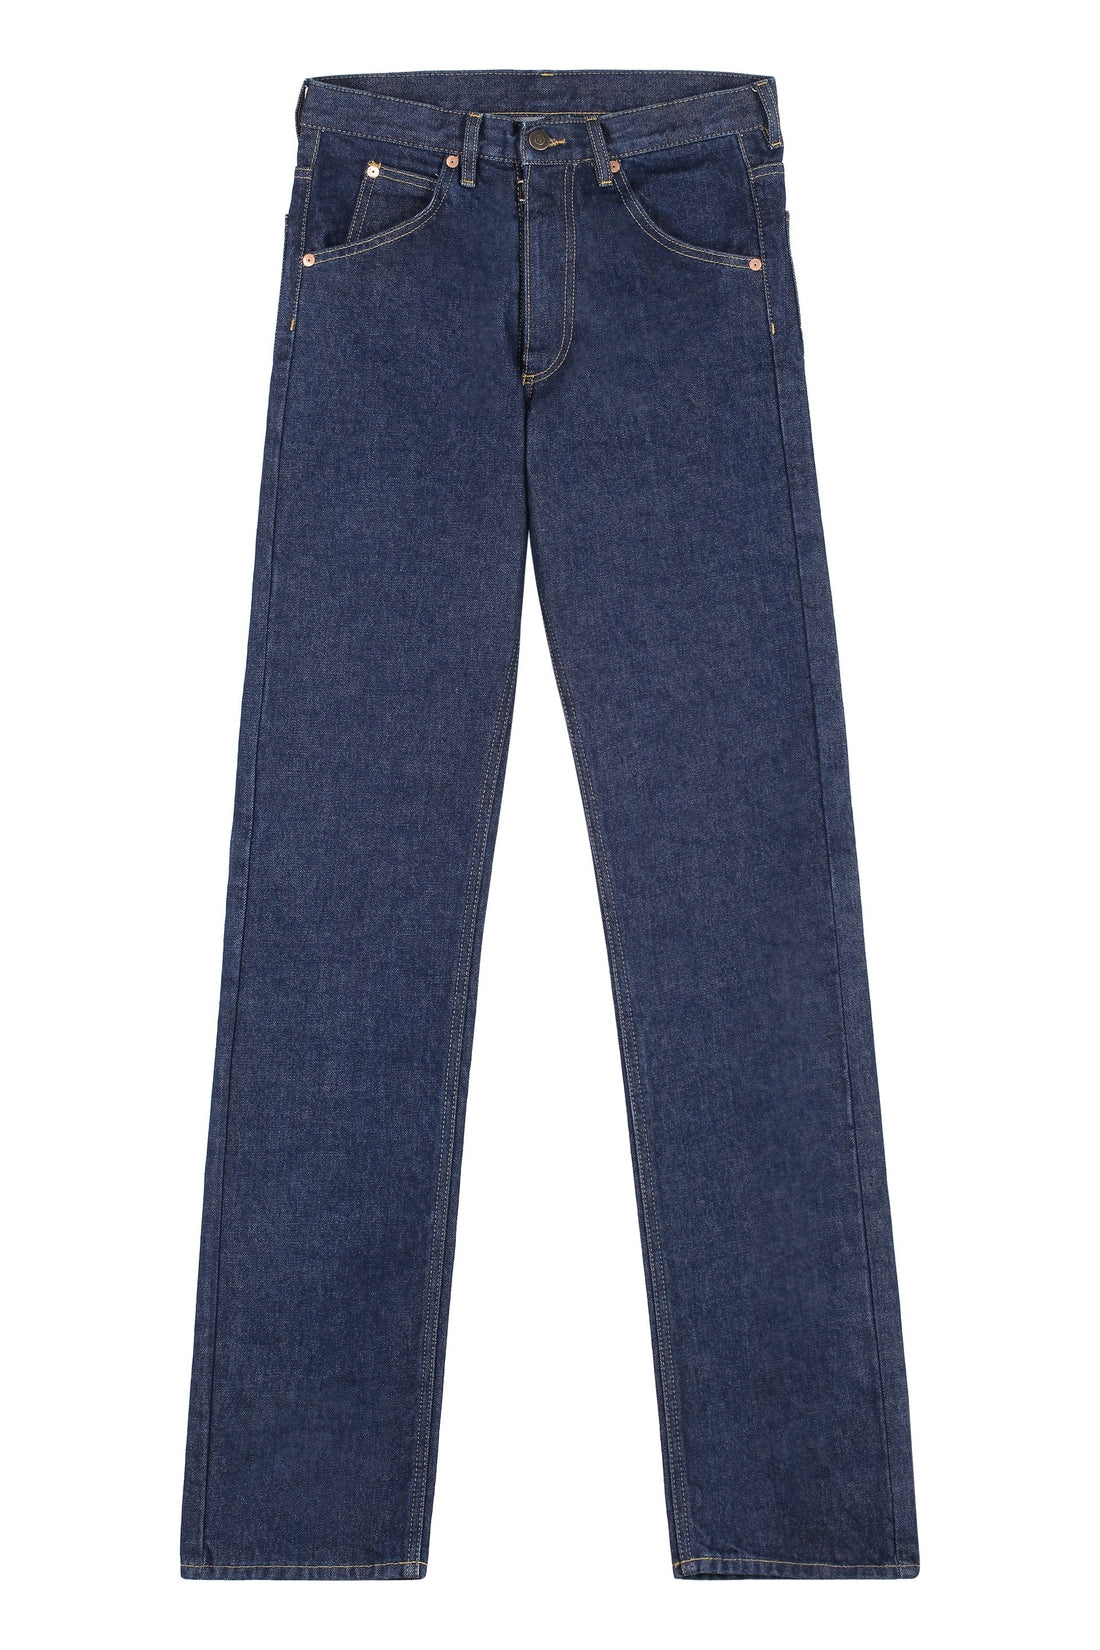 Прямые джинсы с 5 карманами Maison Margiela